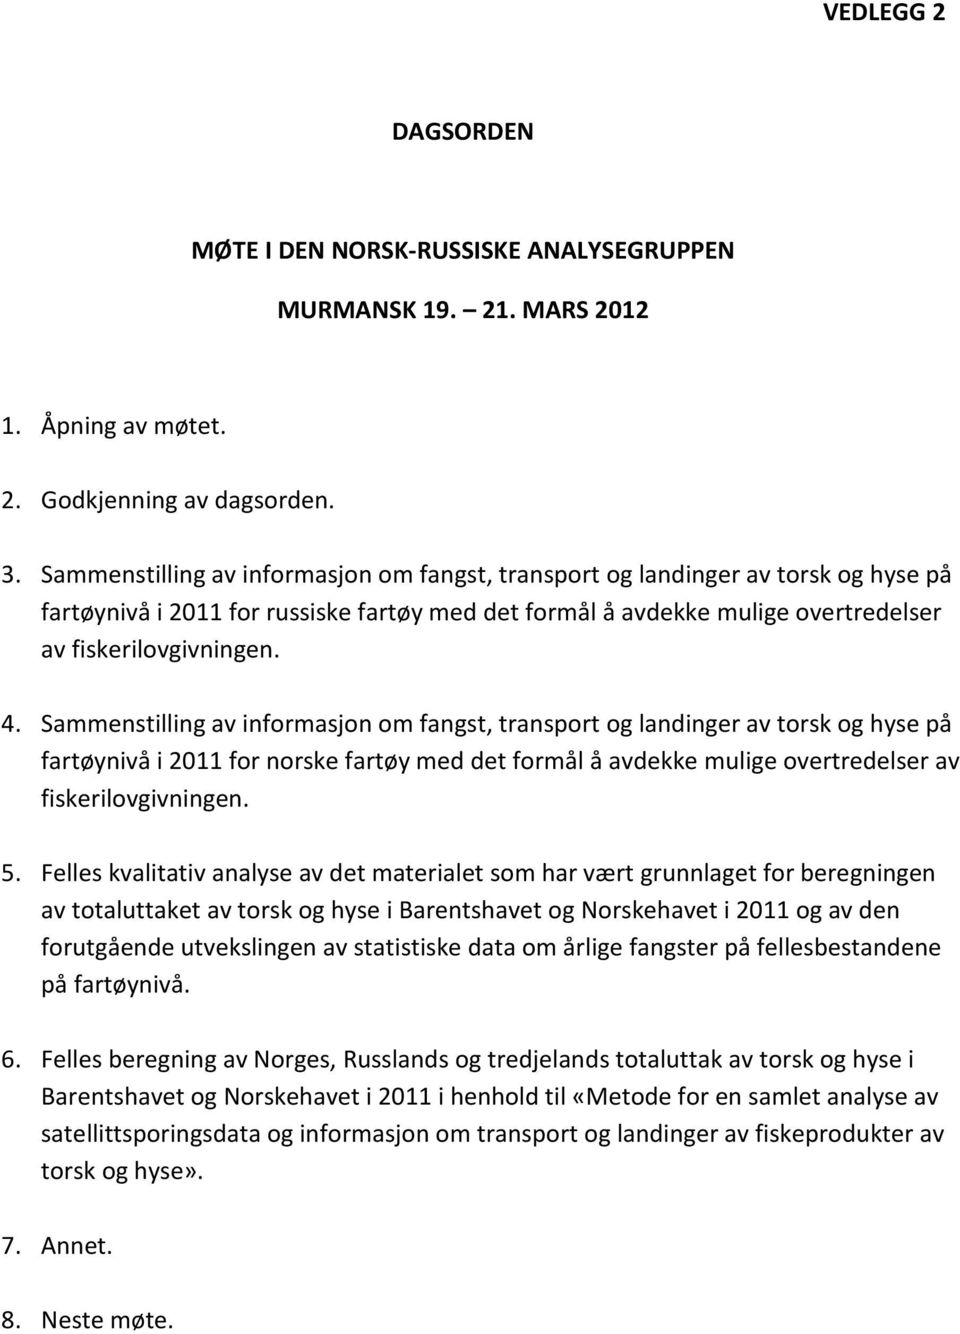 Sammenstilling av informasjon om fangst, transport og landinger av torsk og hyse på fartøynivå i 2011 for norske fartøy med det formål å avdekke mulige overtredelser av fiskerilovgivningen. 5.